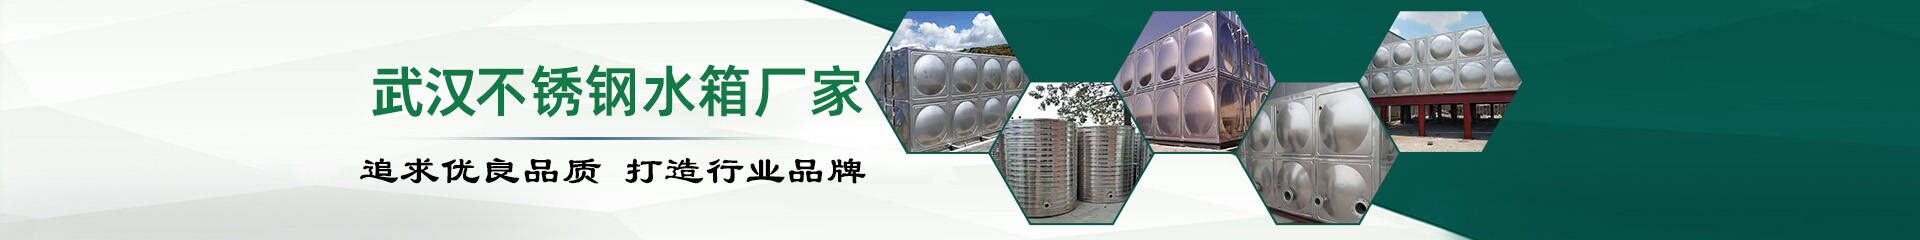 变频恒压供水设备_武汉不锈钢水箱生产厂家